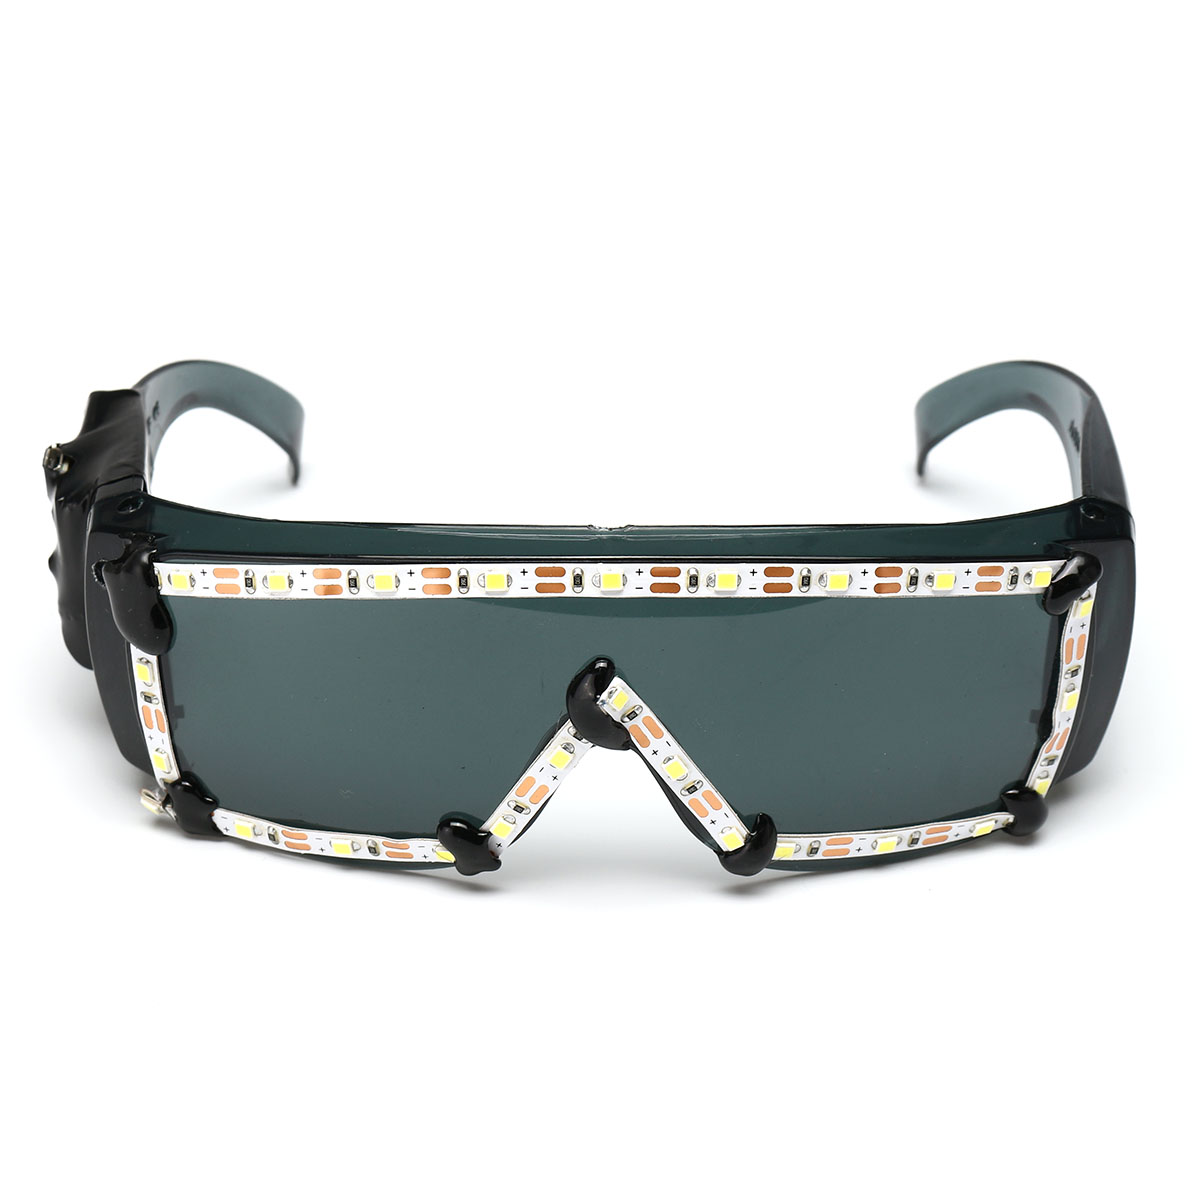 White-LED-Glasses-Light-Up-Glow-Sunglasses-Eyewear-Shades-Nightclub-Party-Decor-1525653-7